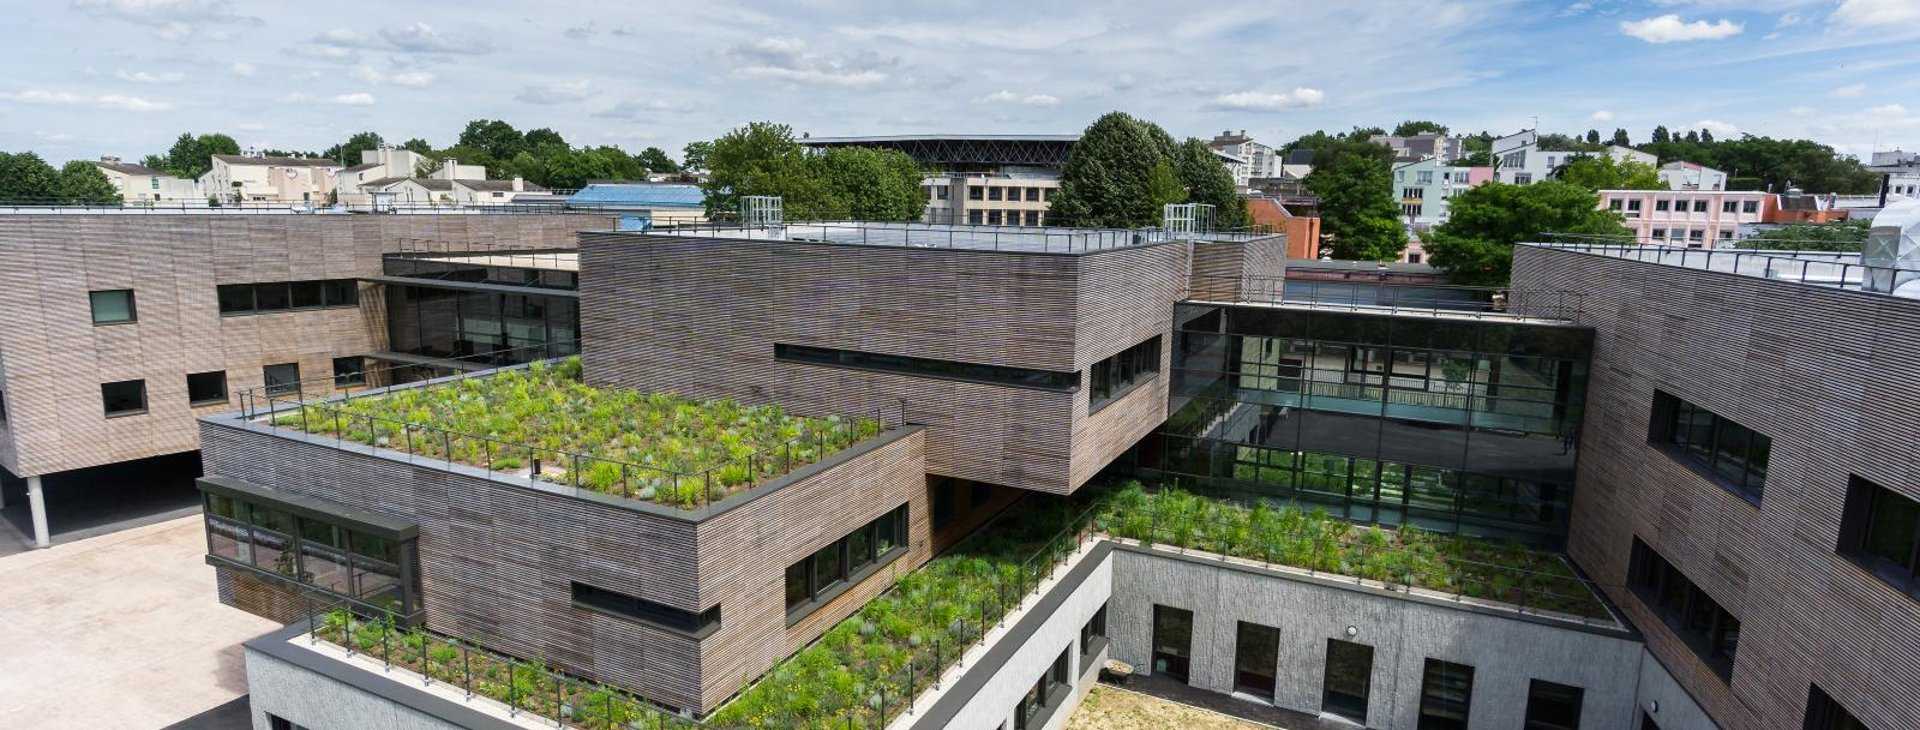 Озеленение крыш домов, зданий – технологии и особенности